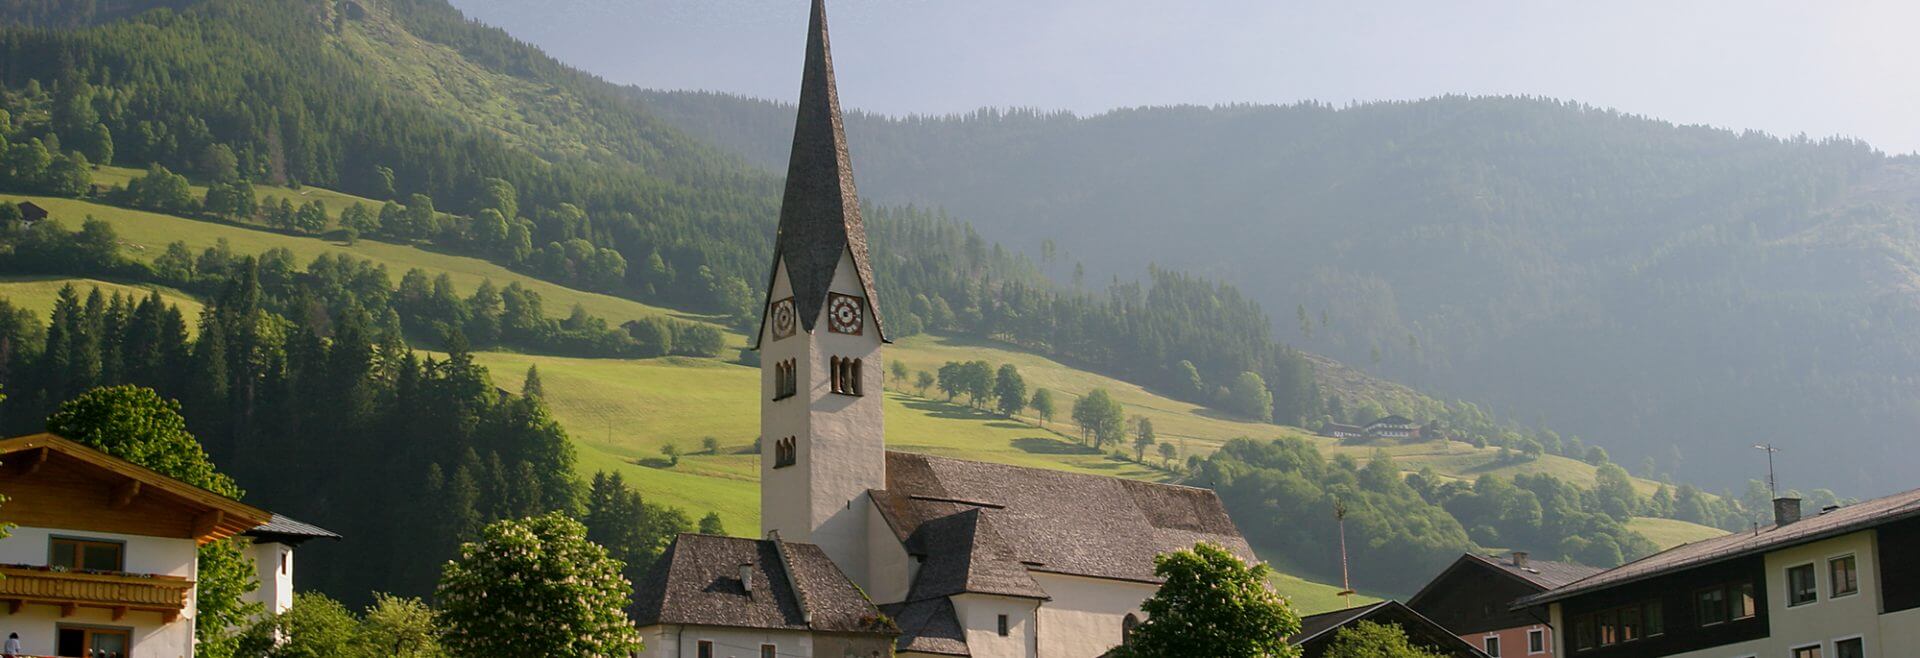 Kirche in Stuhlfelden im Sommer